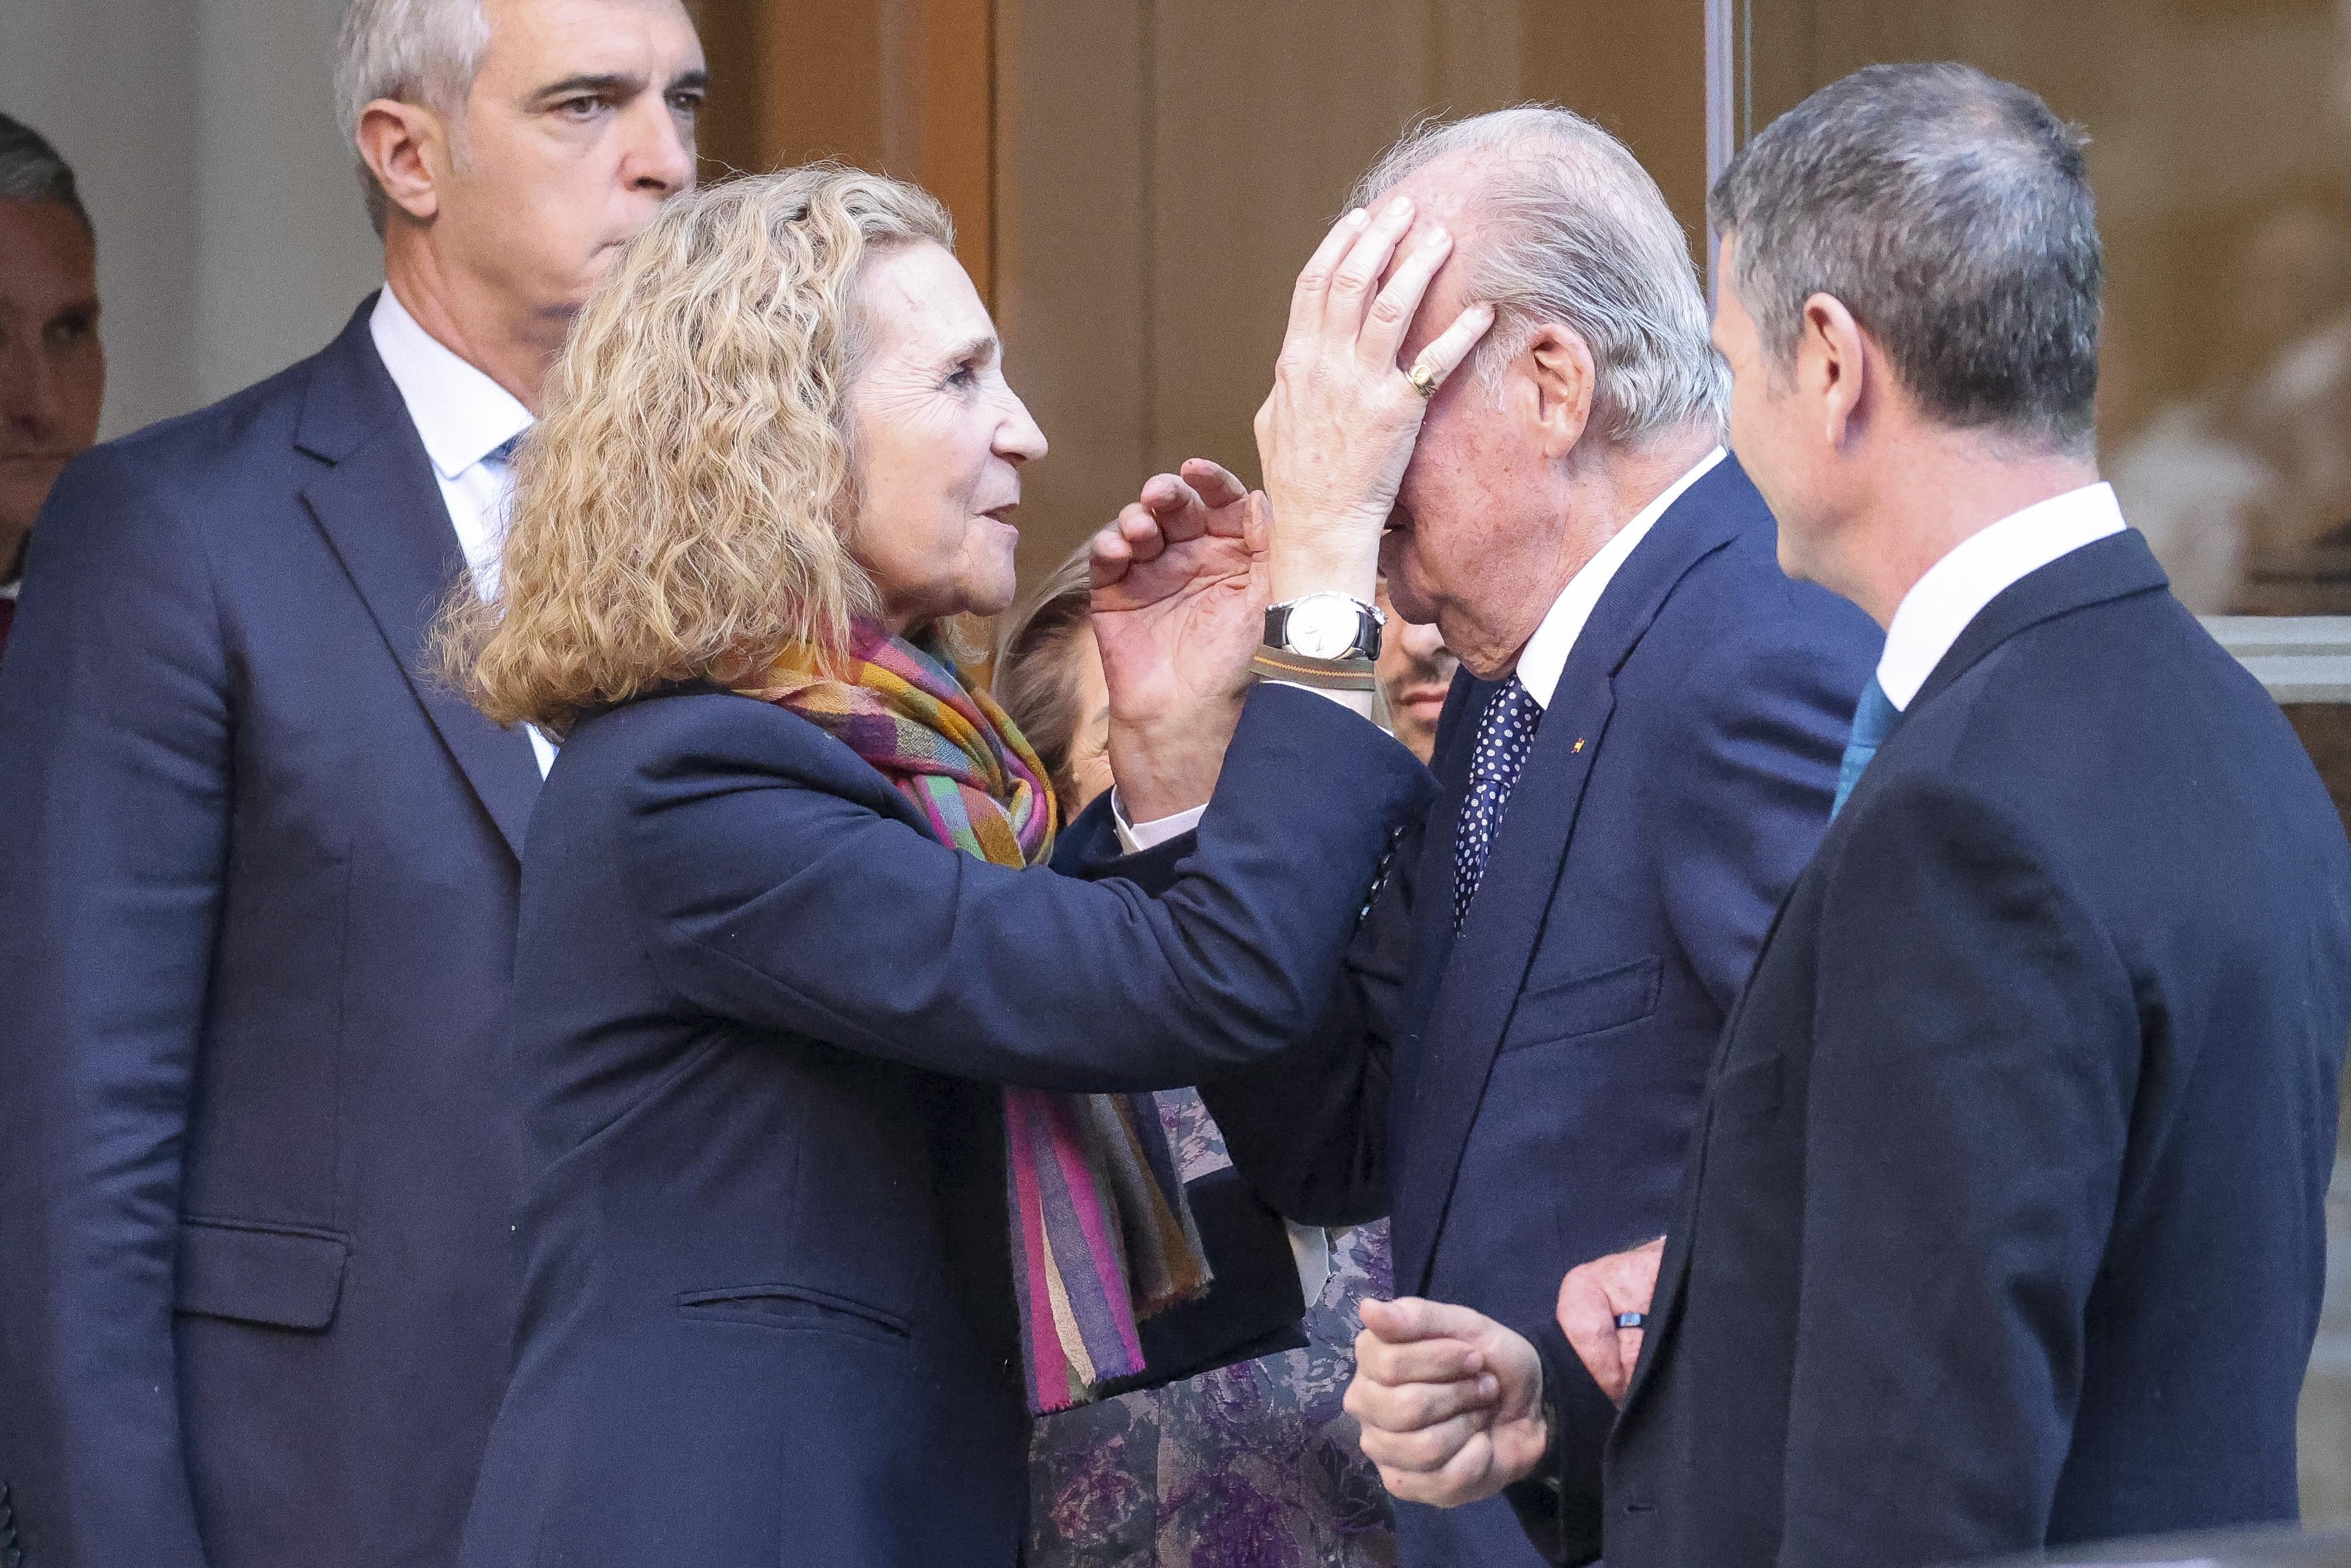 El gesto de Juan Carlos y Elena esconde un problema de salud mental, según una experta